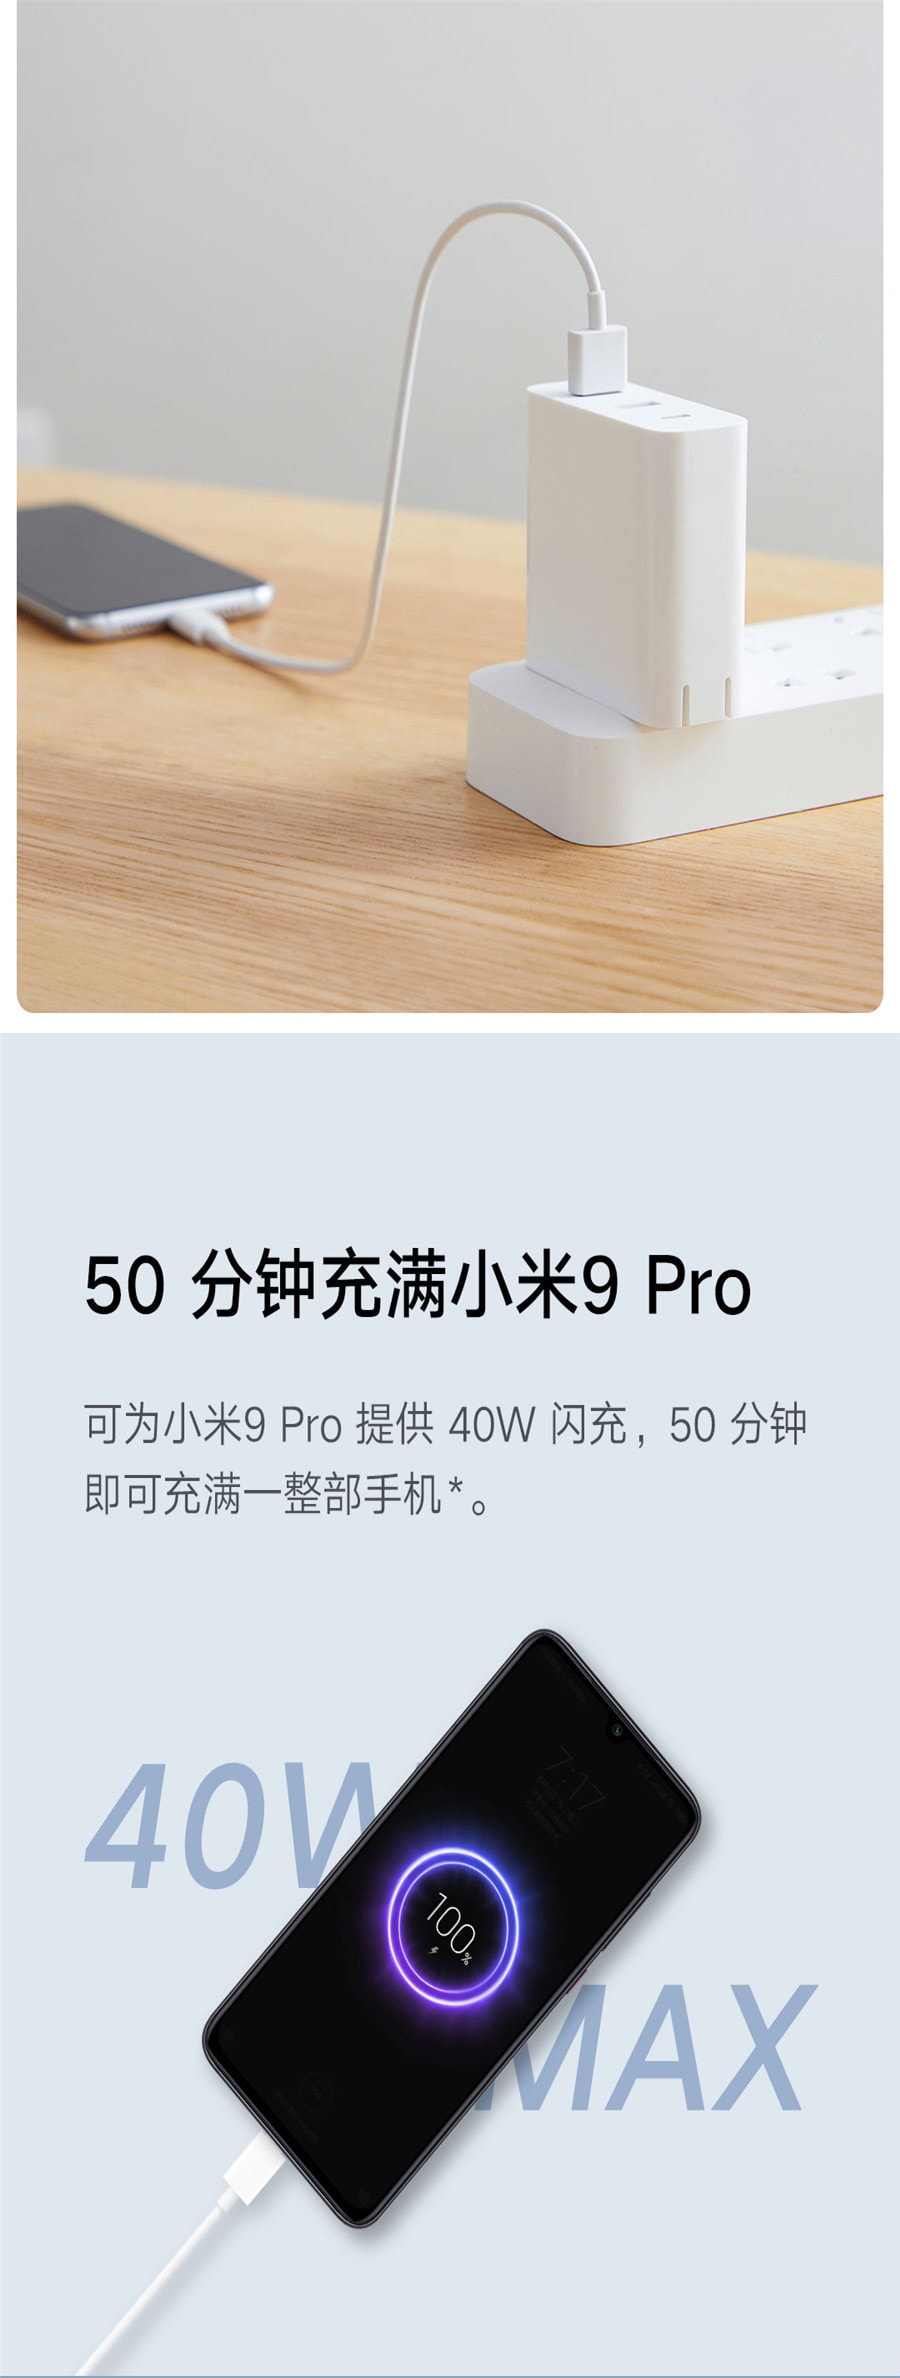 已淘汰[中国直邮]小米 MI USB手机充电头/电源适配器65W 快充版(2A1C)  AD653 三口输出 可折叠插脚 附带数据线 1个装